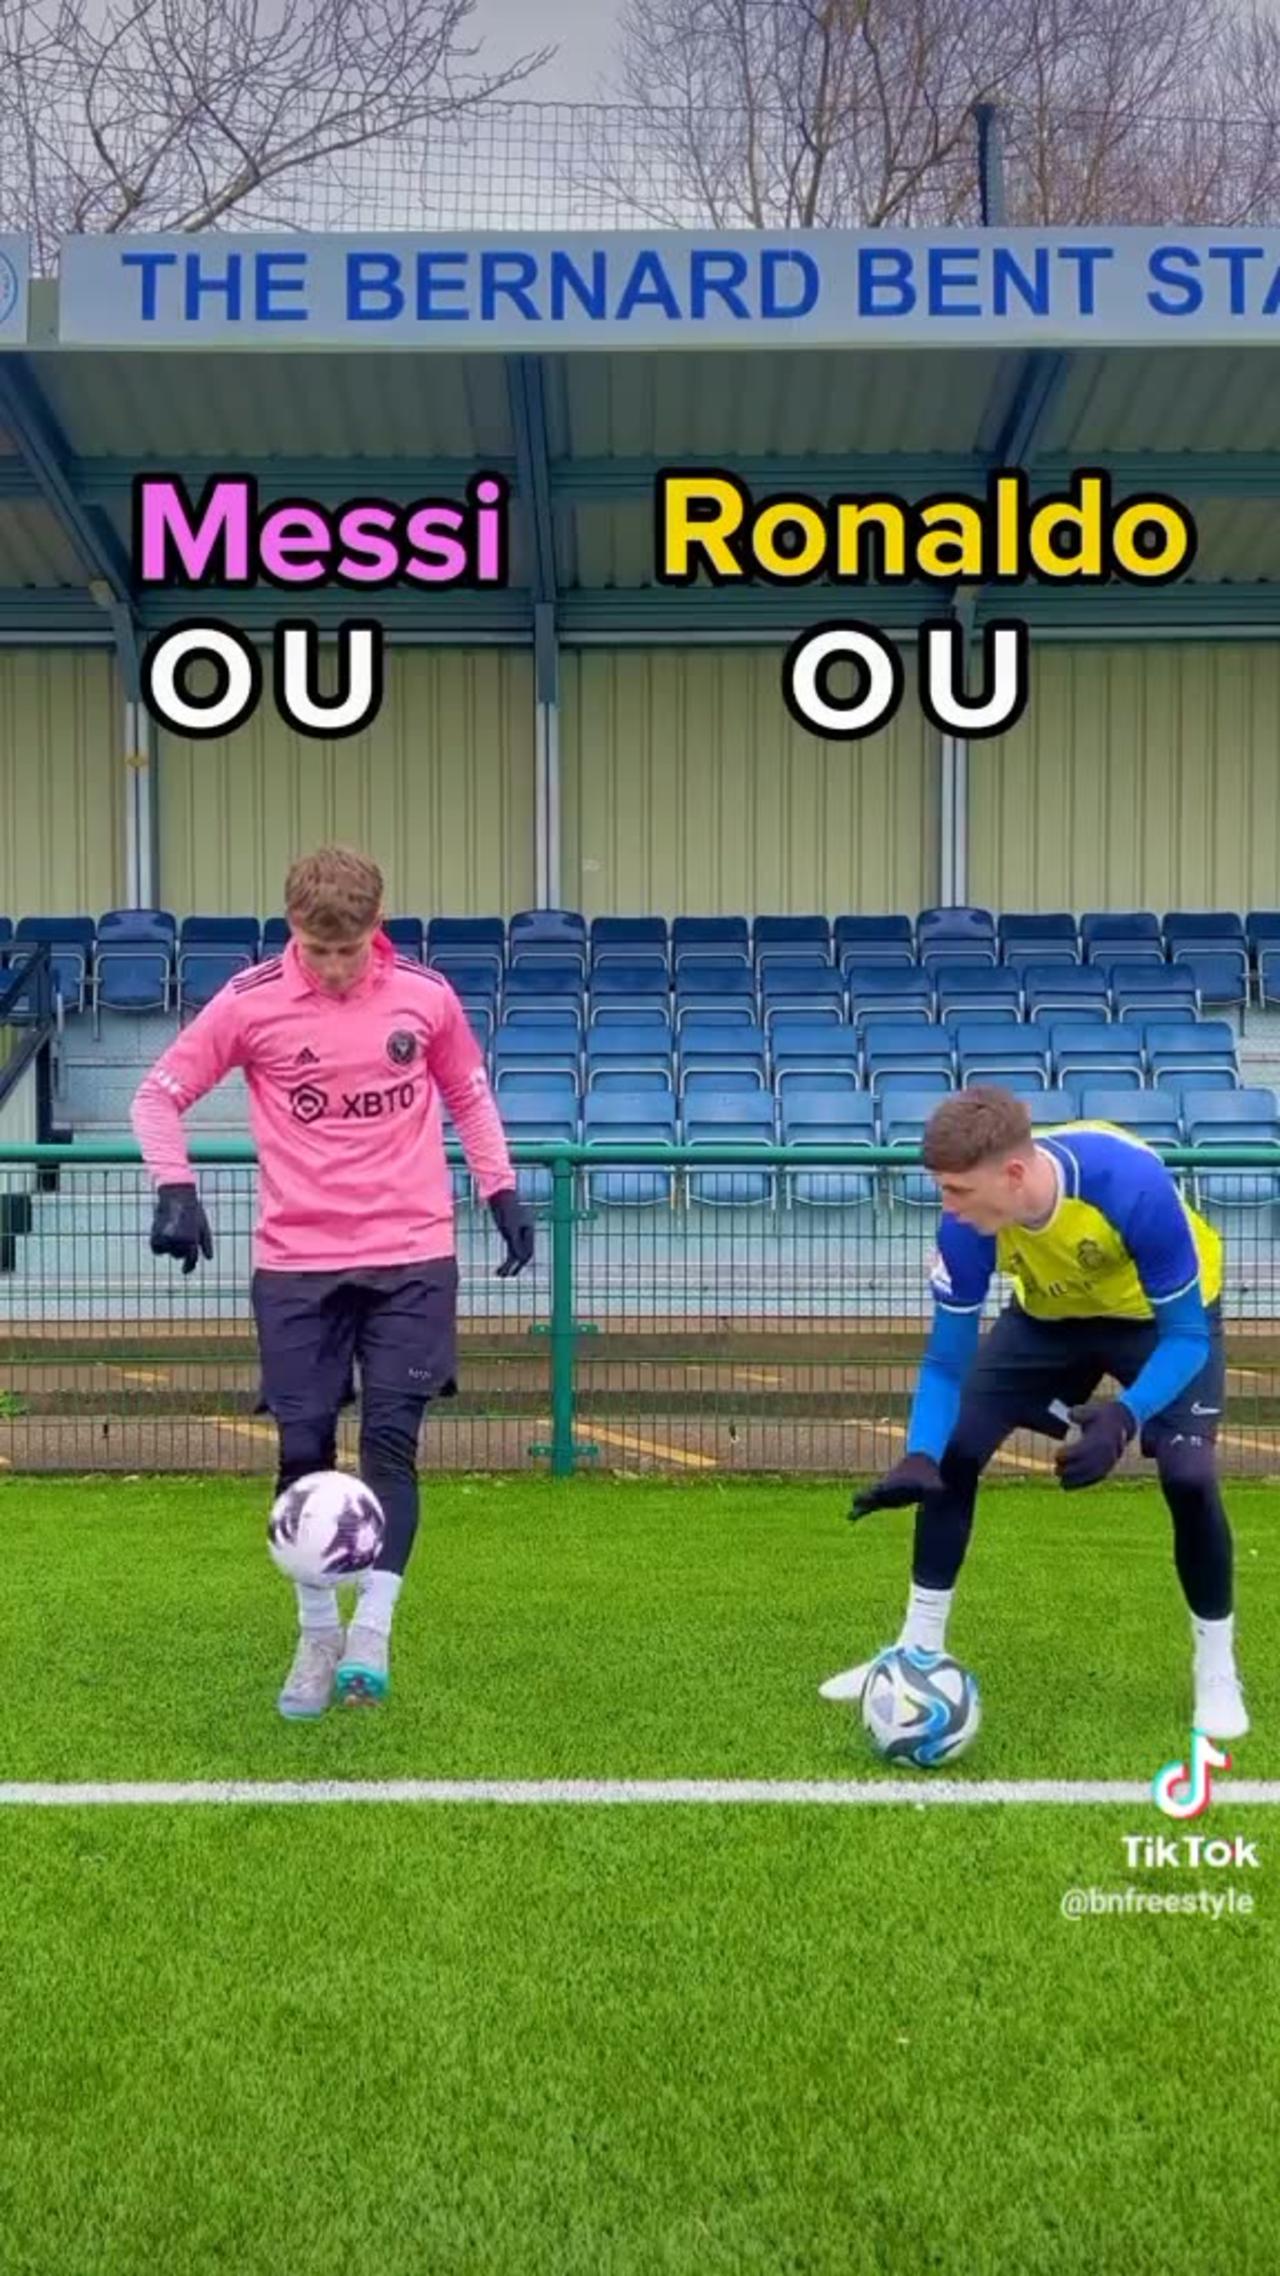 Messi & Ronaldo dibbling skill